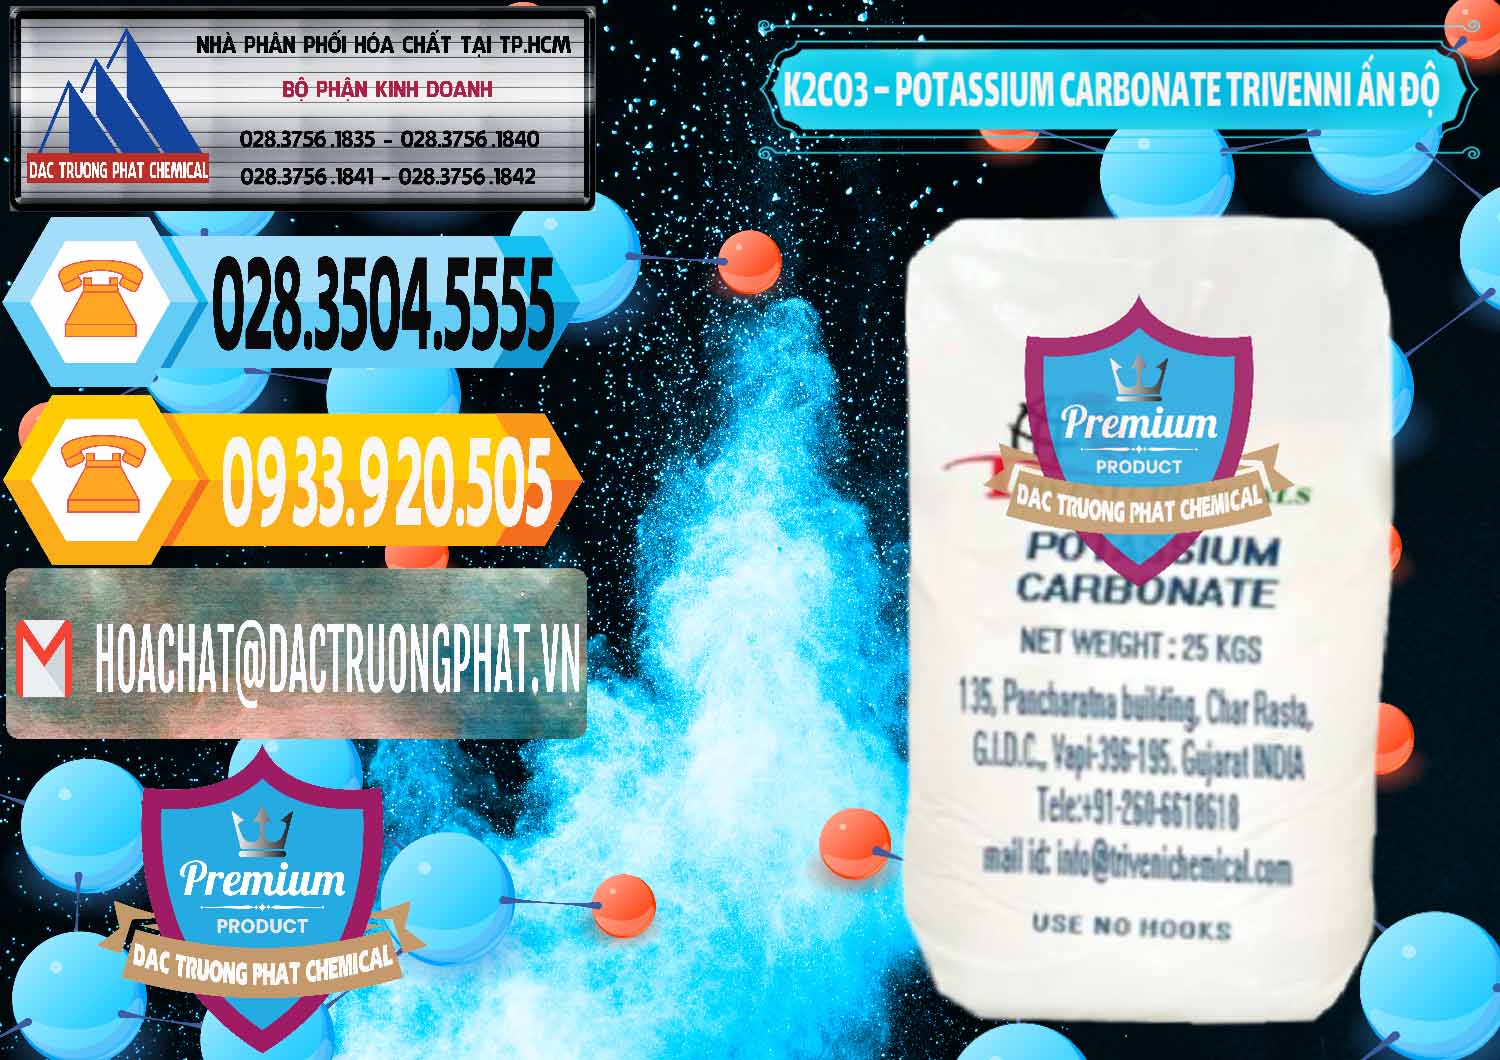 Công ty bán & cung cấp K2Co3 – Potassium Carbonate Trivenni Ấn Độ India - 0473 - Cung cấp - phân phối hóa chất tại TP.HCM - hoachattayrua.net